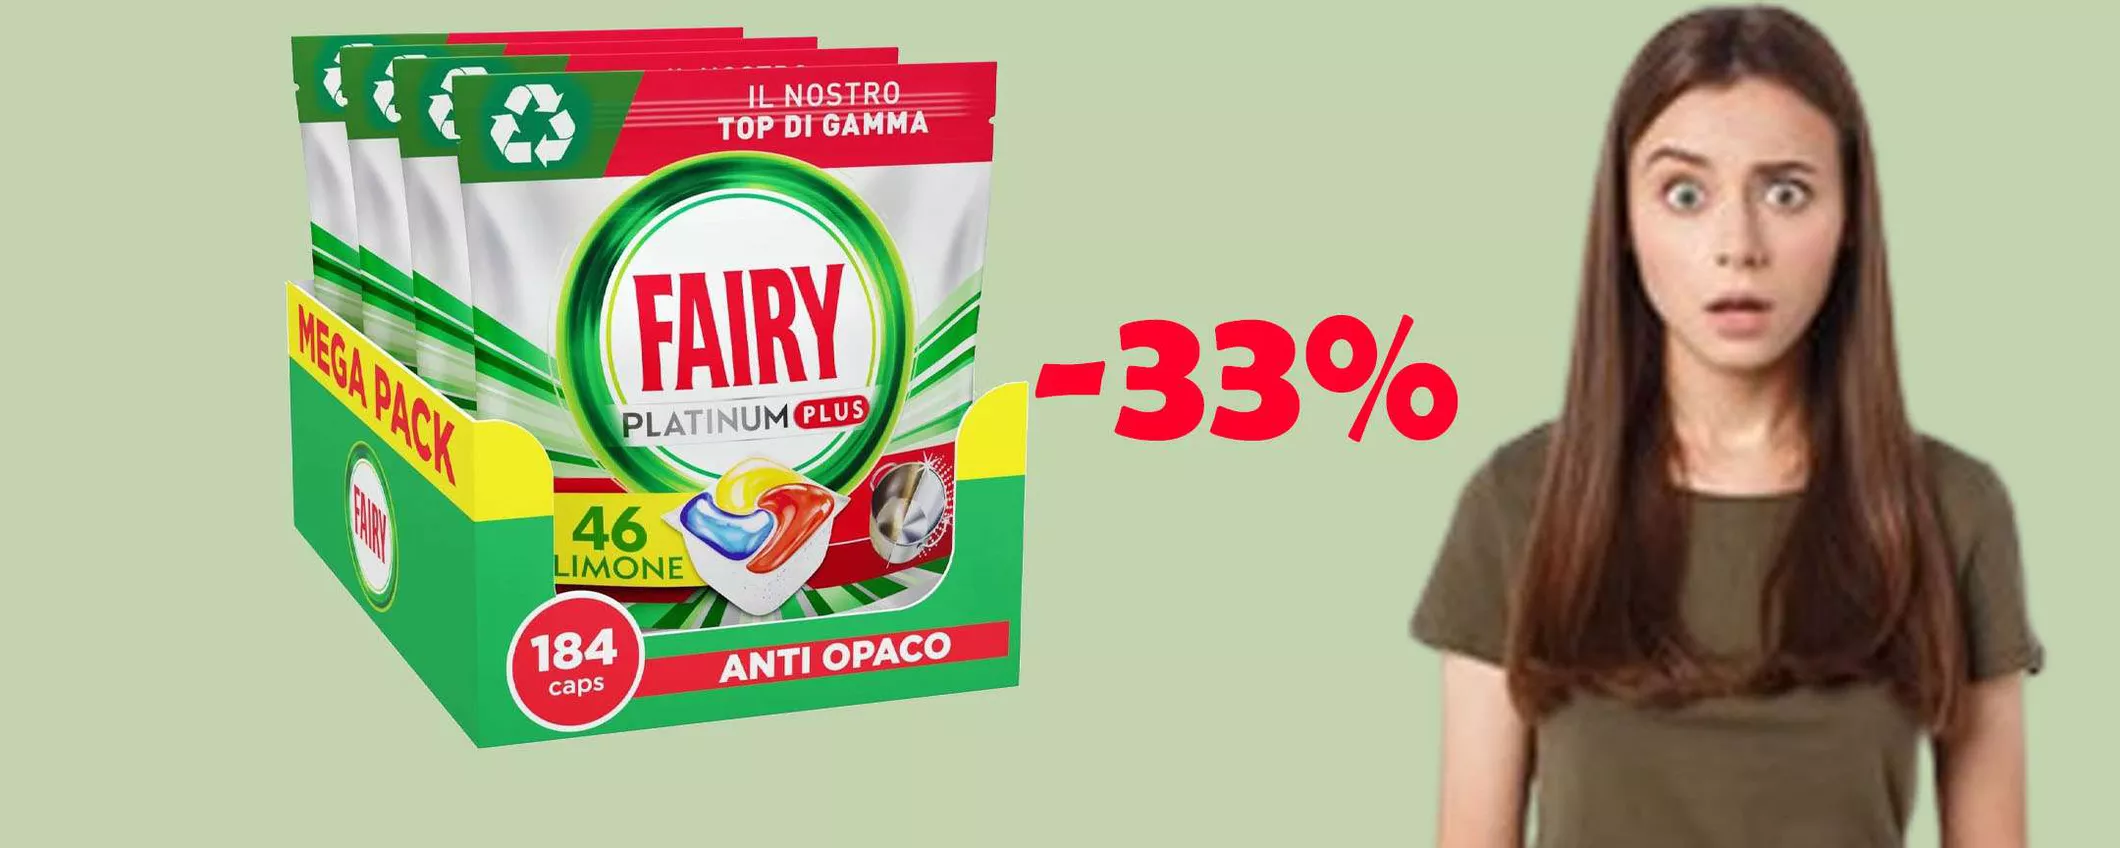 Fairy Platinum Plus (184 capsule) in MEGA offerta scontate del 33%